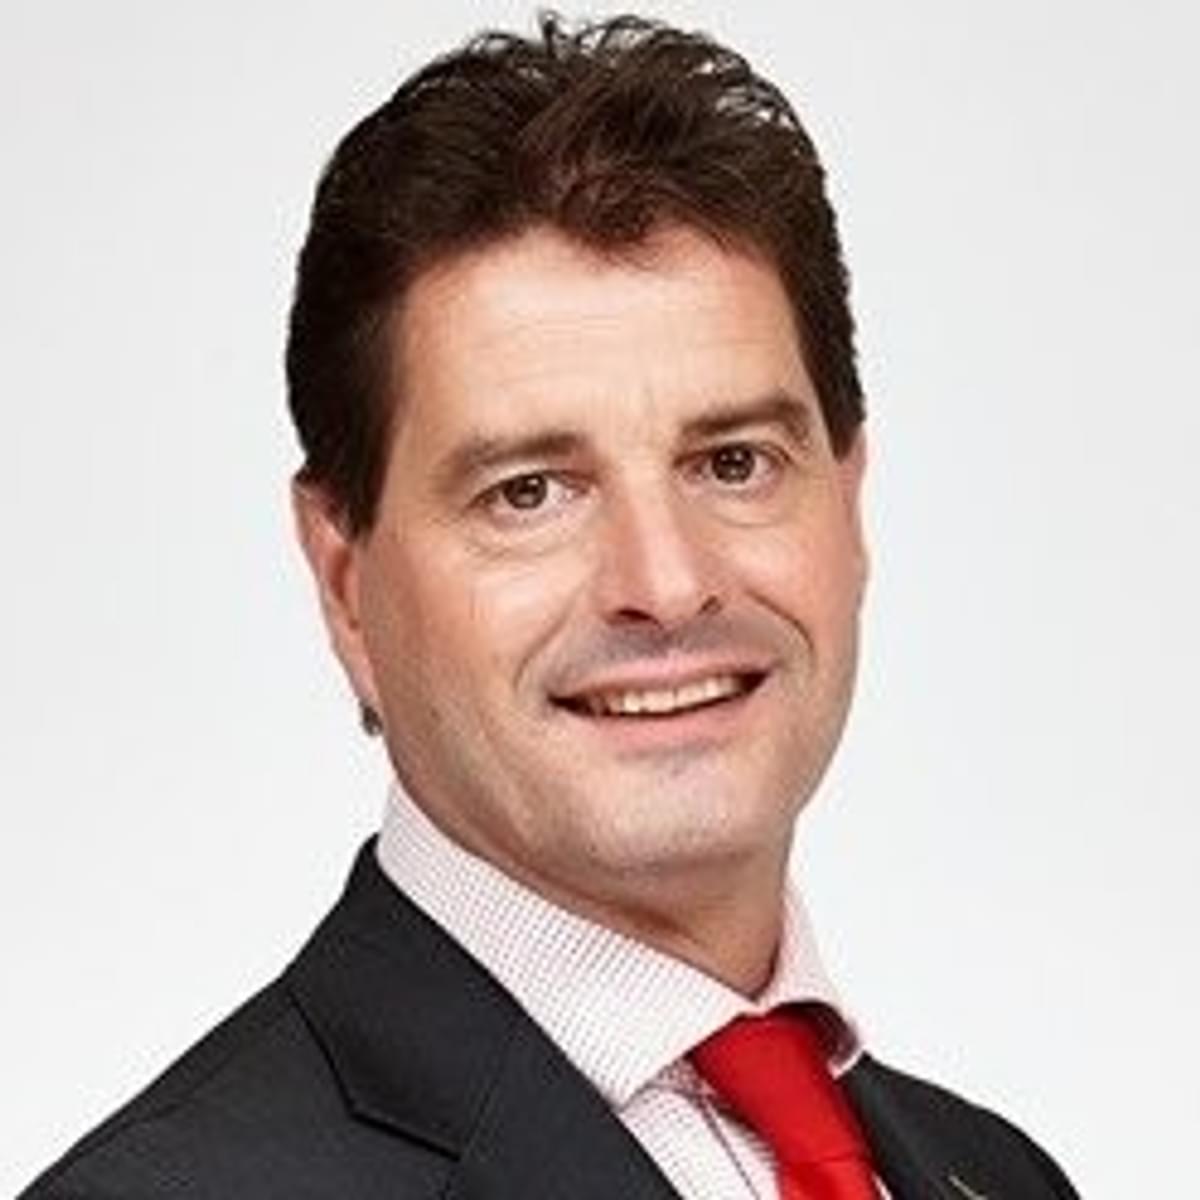 Mike de Bresser benoemd tot CEO Euler Hermes Nederland image